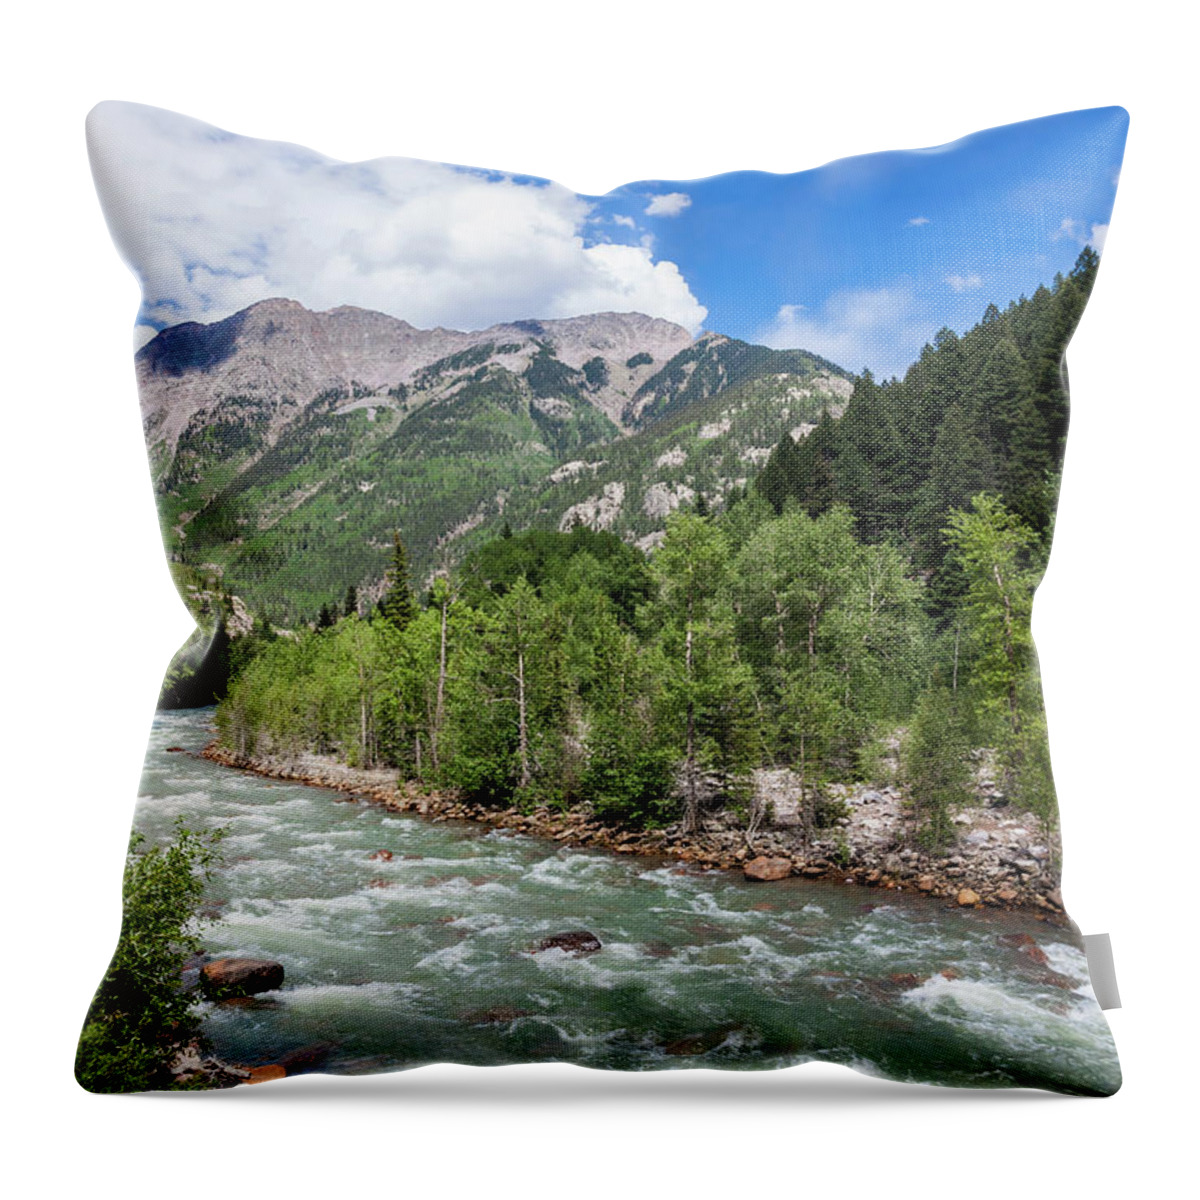 Animas River Throw Pillow featuring the photograph Animas River, Silverton, Colorado by Lon Dittrick